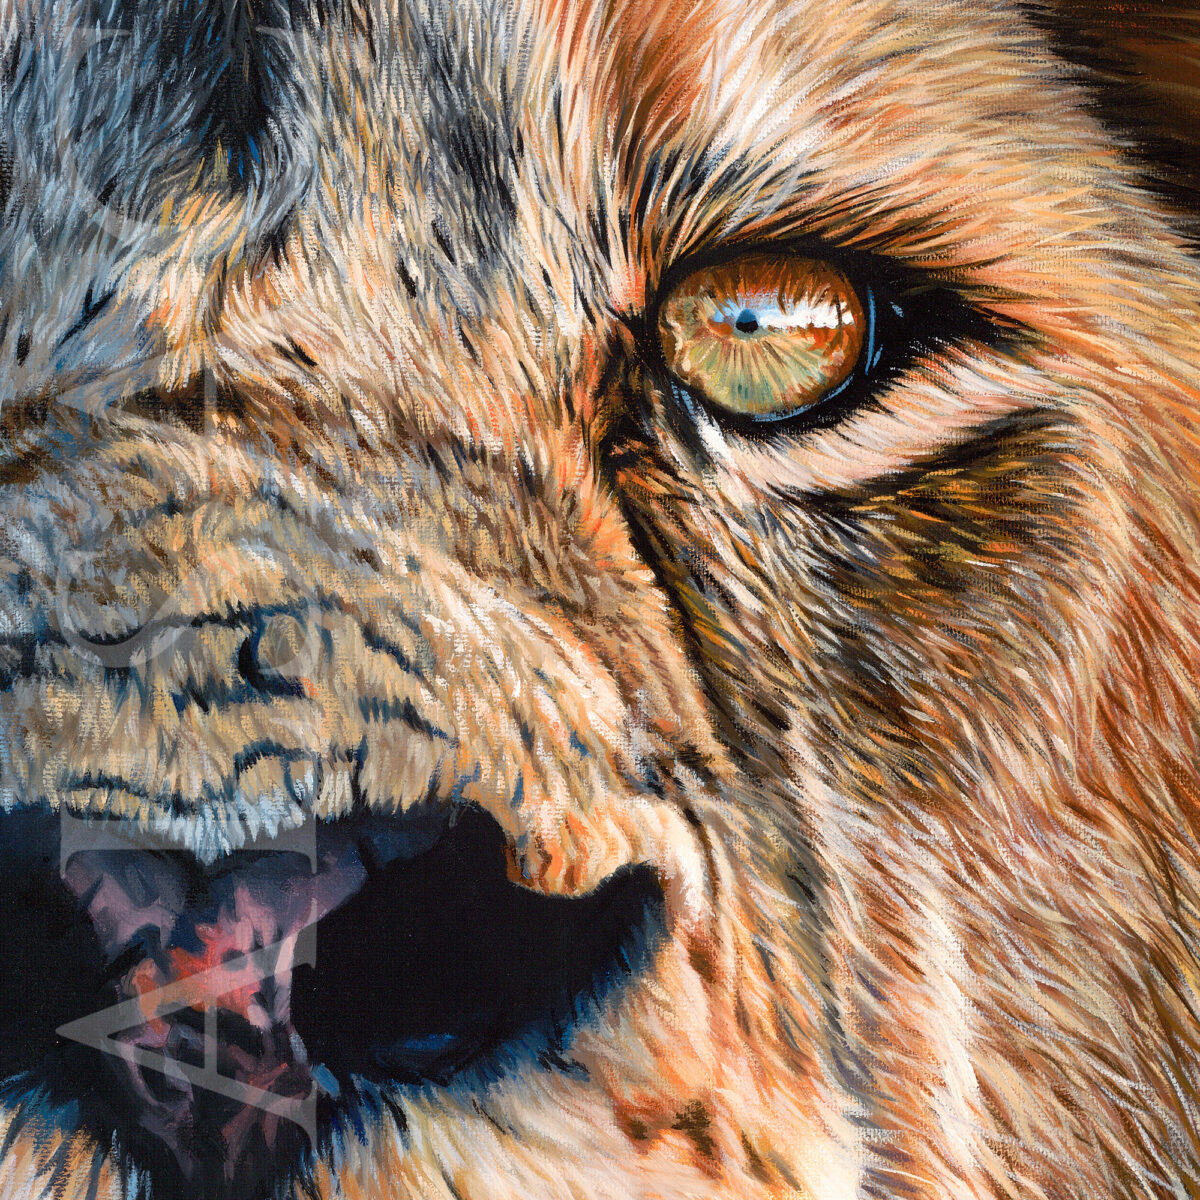 Detail du tableau "maximus" : portrait d'un magnifique lion hyper-realiste par Stéphane Alsac